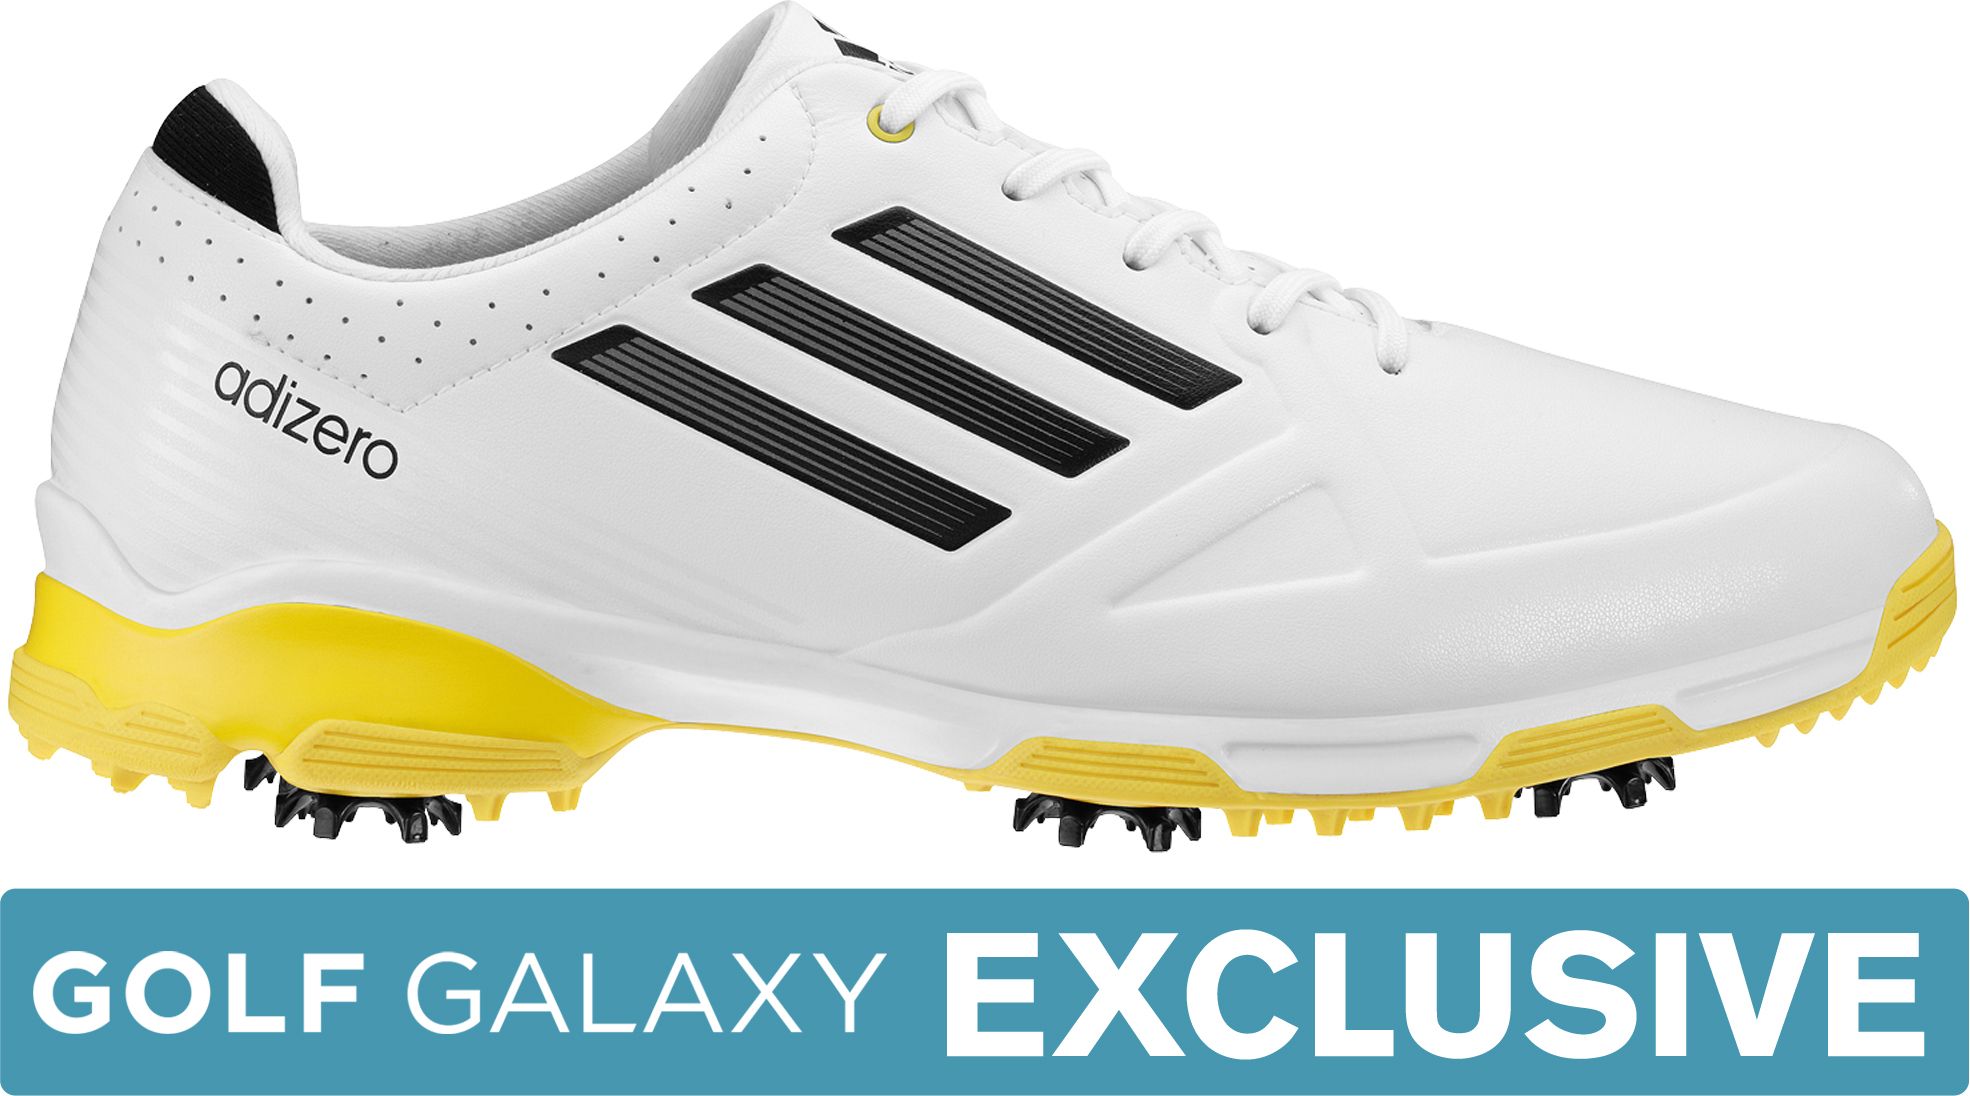 Adidas Menâs Adizero 6-spike Golf Shoe â White/black/yellow | Golf